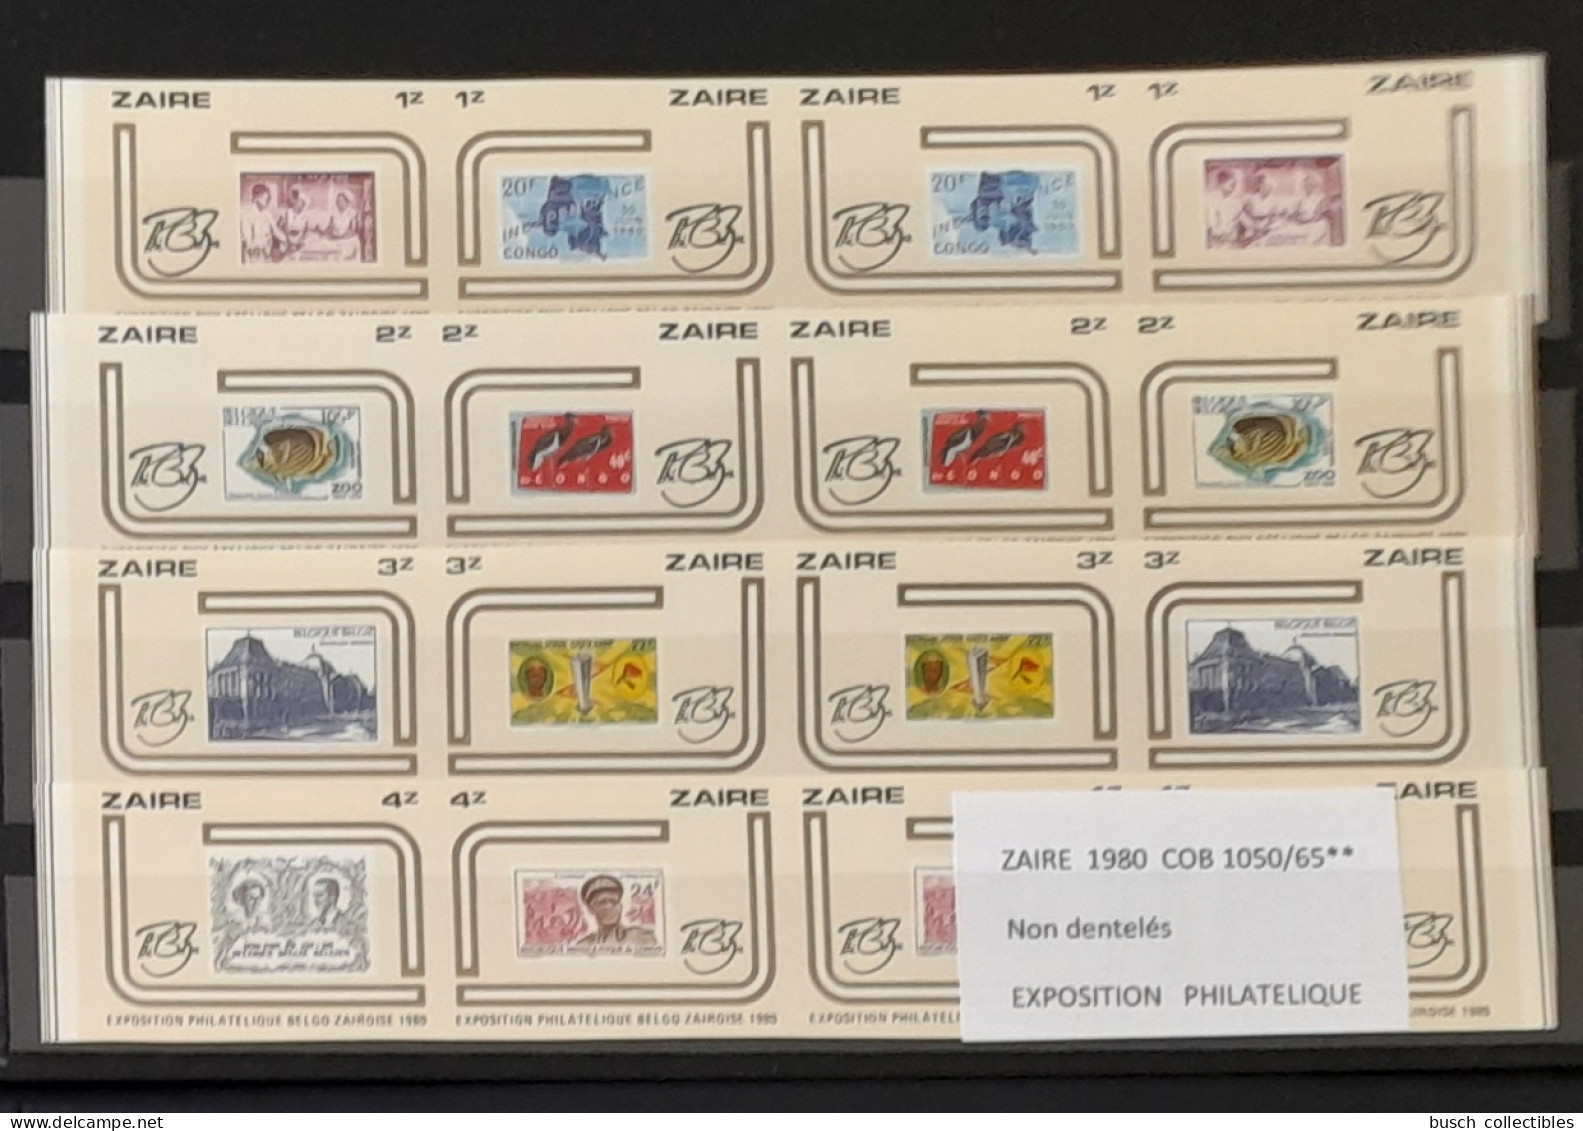 Congo Zaire 1980 COB 1050 - 1065 IMPERF Non Dentelé Exposition Philatélique Zairoise Stamp Exhibition Timbres Sur Stamps - Ungebraucht